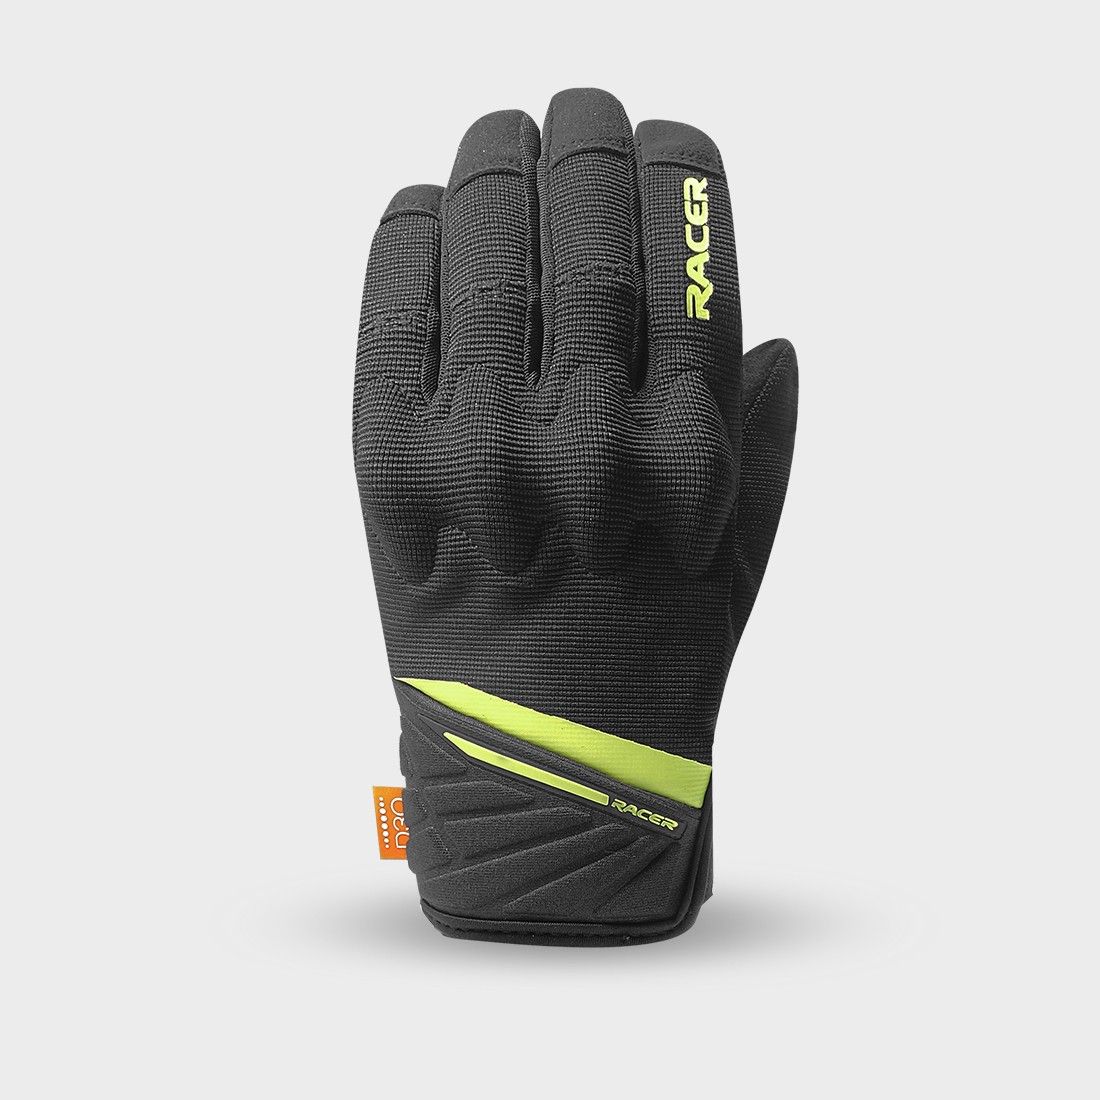 ROCA 2 - Motorcycle racer gloves